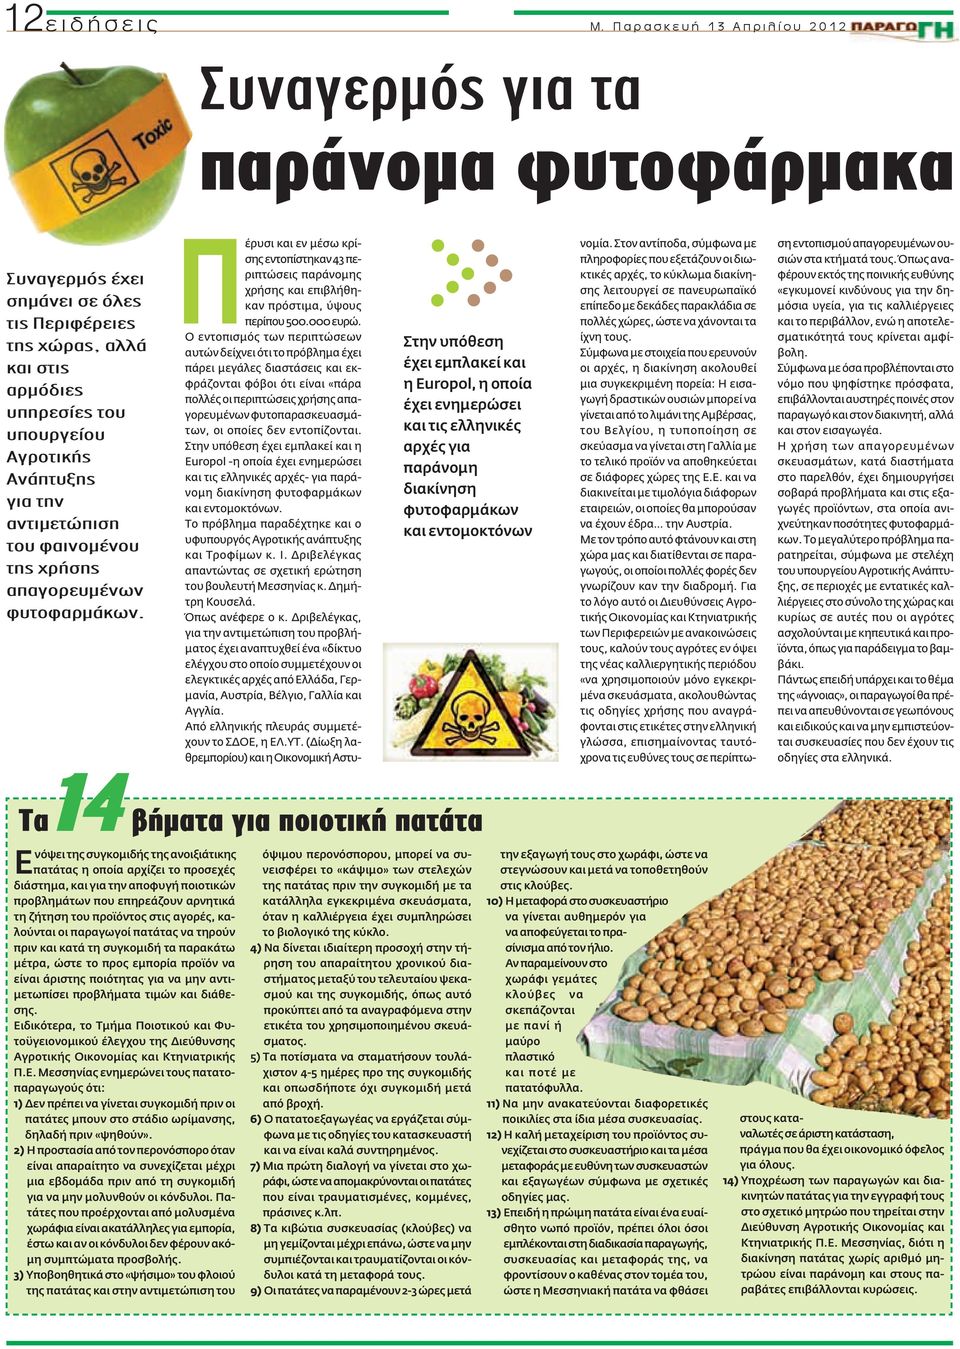 Αγροτικής Ανάπτυξης για την αντιμετώπιση του φαινομένου της χρήσης απαγορευμένων φυτοφαρμάκων.